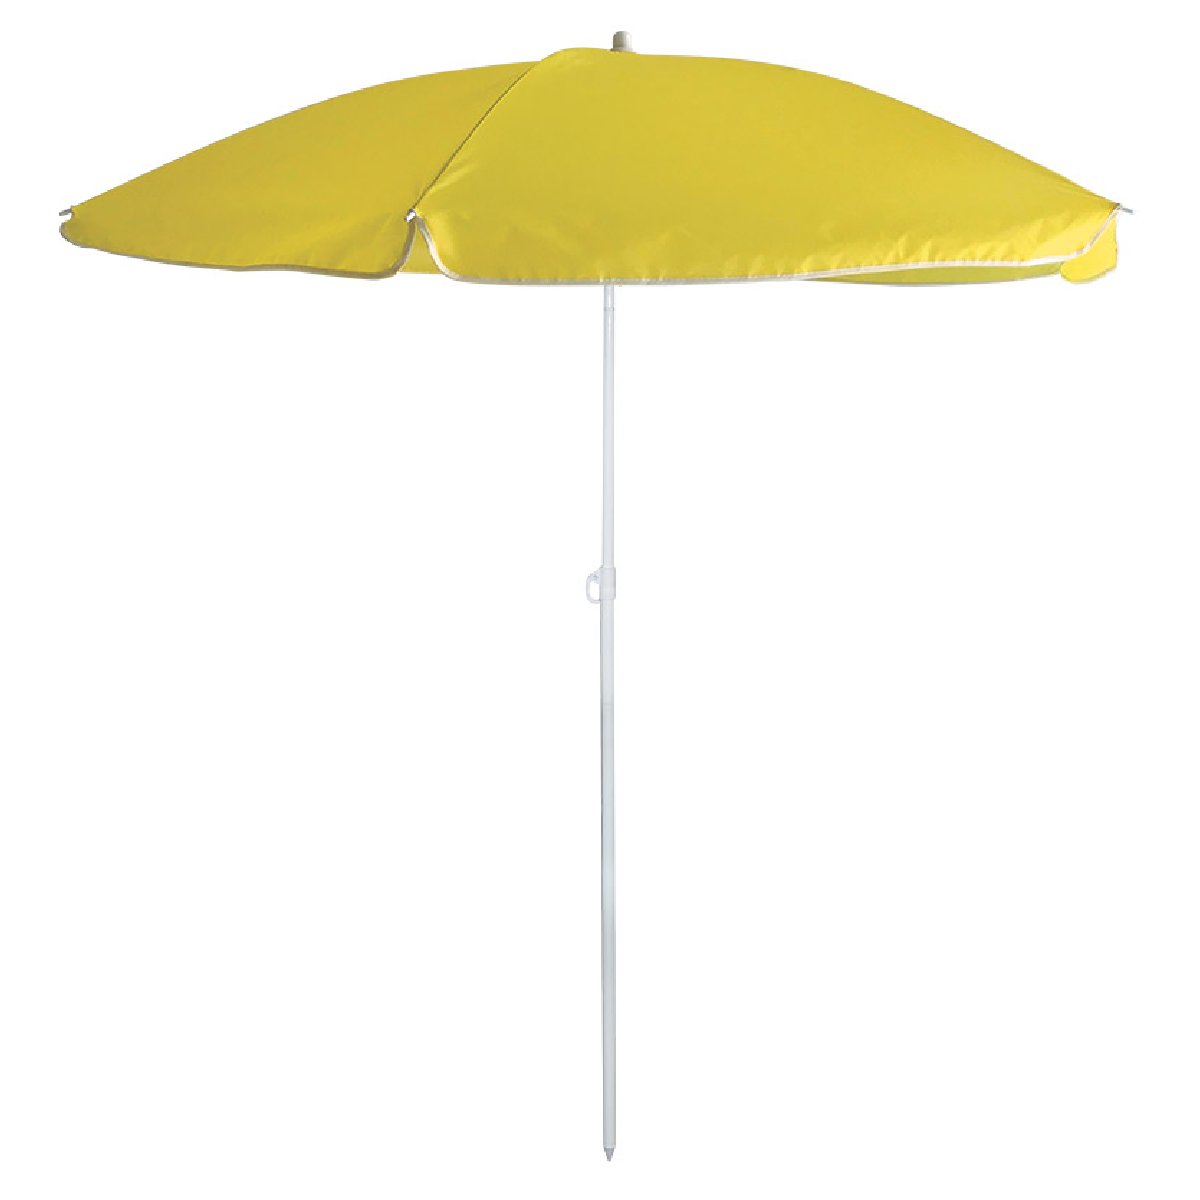 Зонт пляжный Ecos BU-67 диаметр 165 см, складная штанга 190 см (999367)Купить